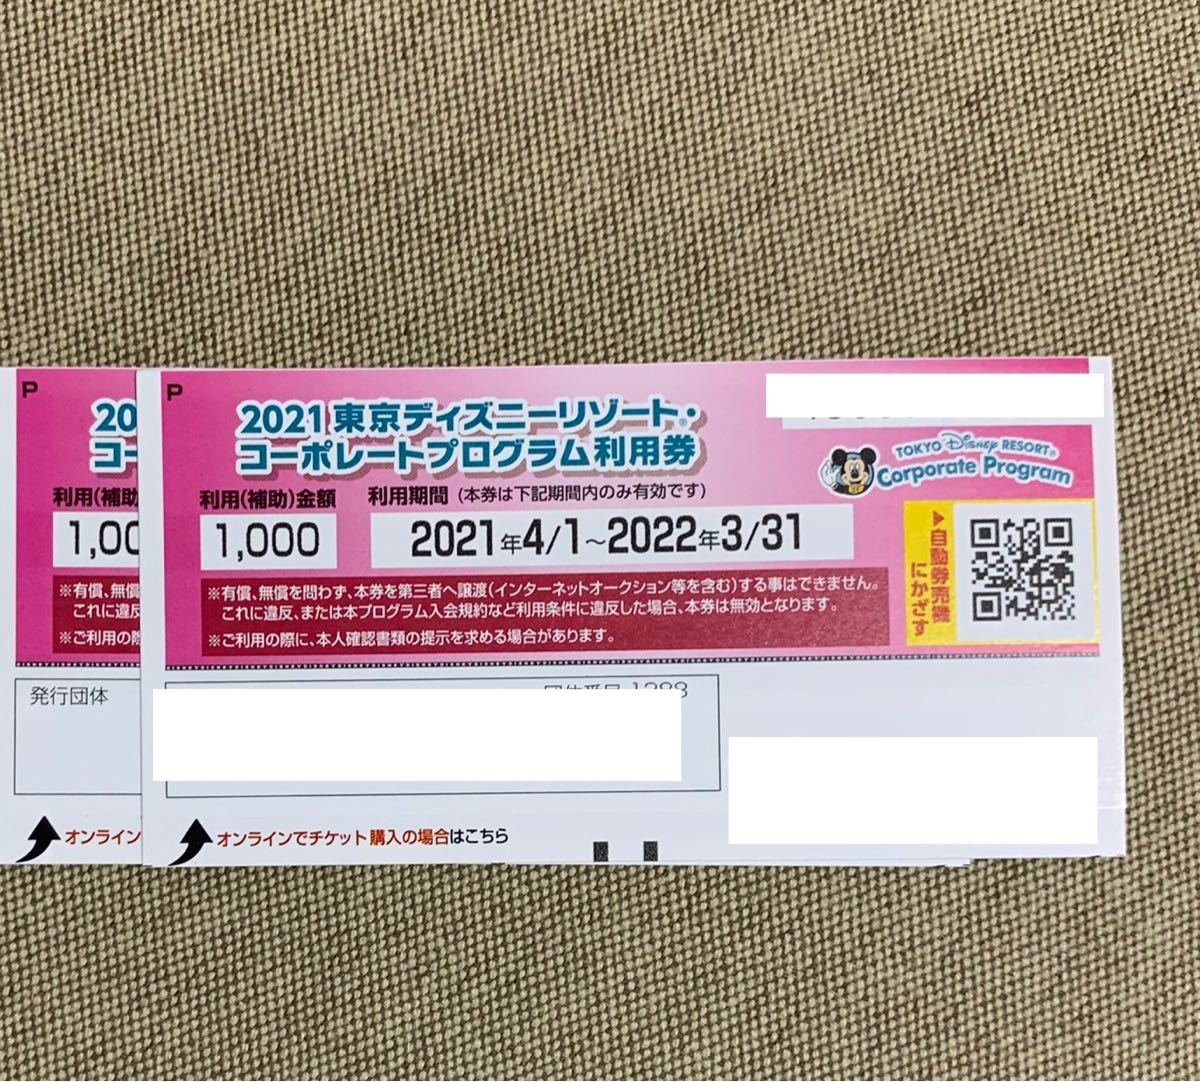 東京ディズニーリゾート パスポート チケット割引券 コーポレート